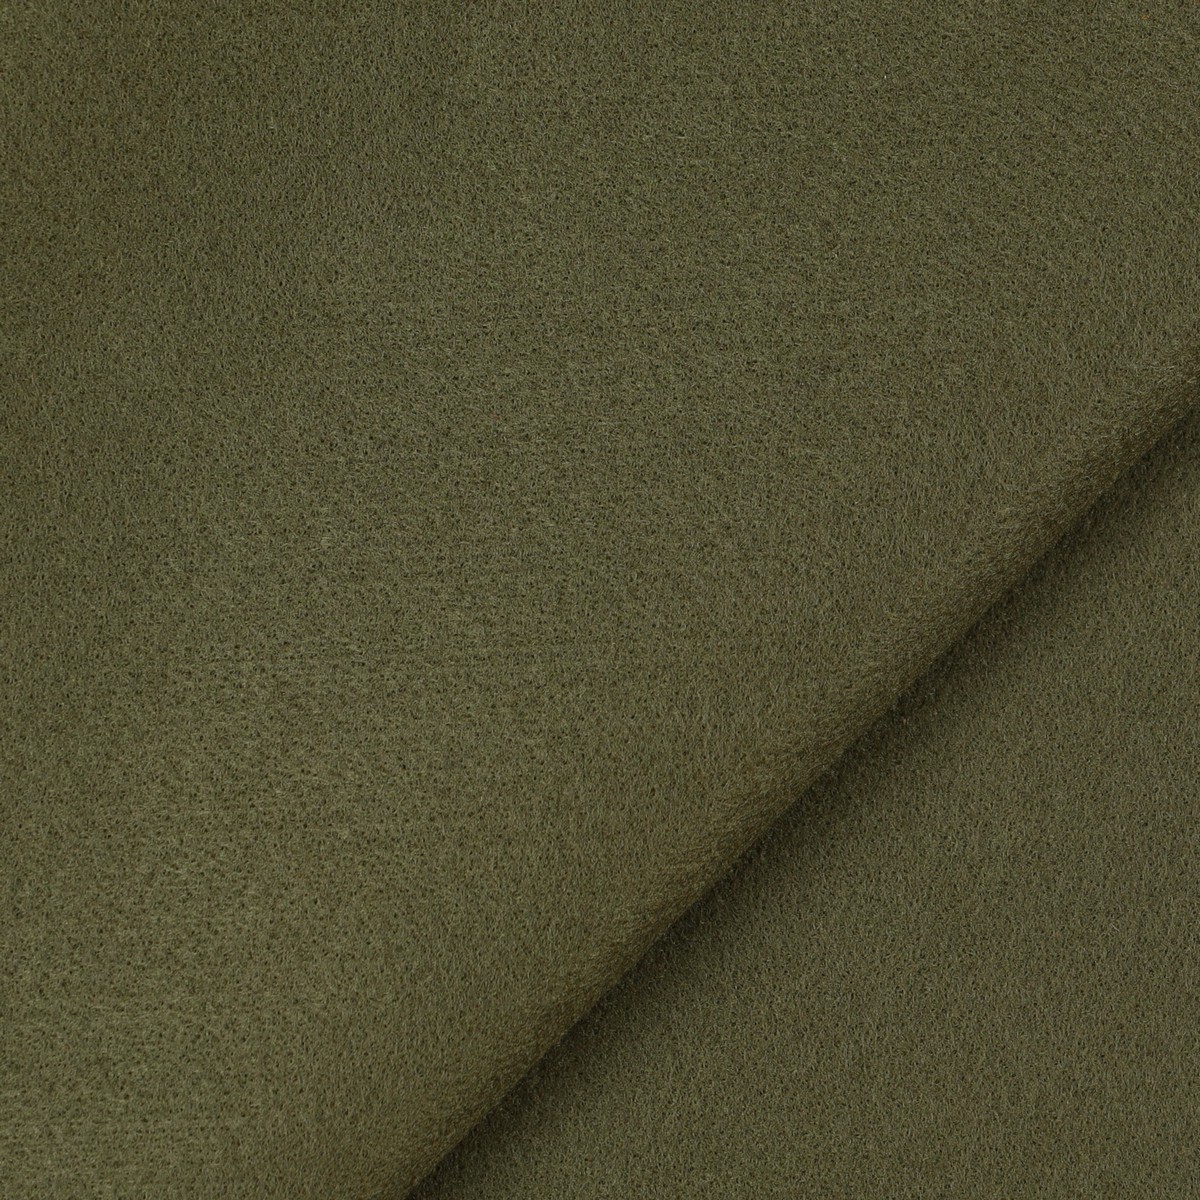 Pannelli Pannolenci - Colore Verde Militare - Misura 50x70cm 